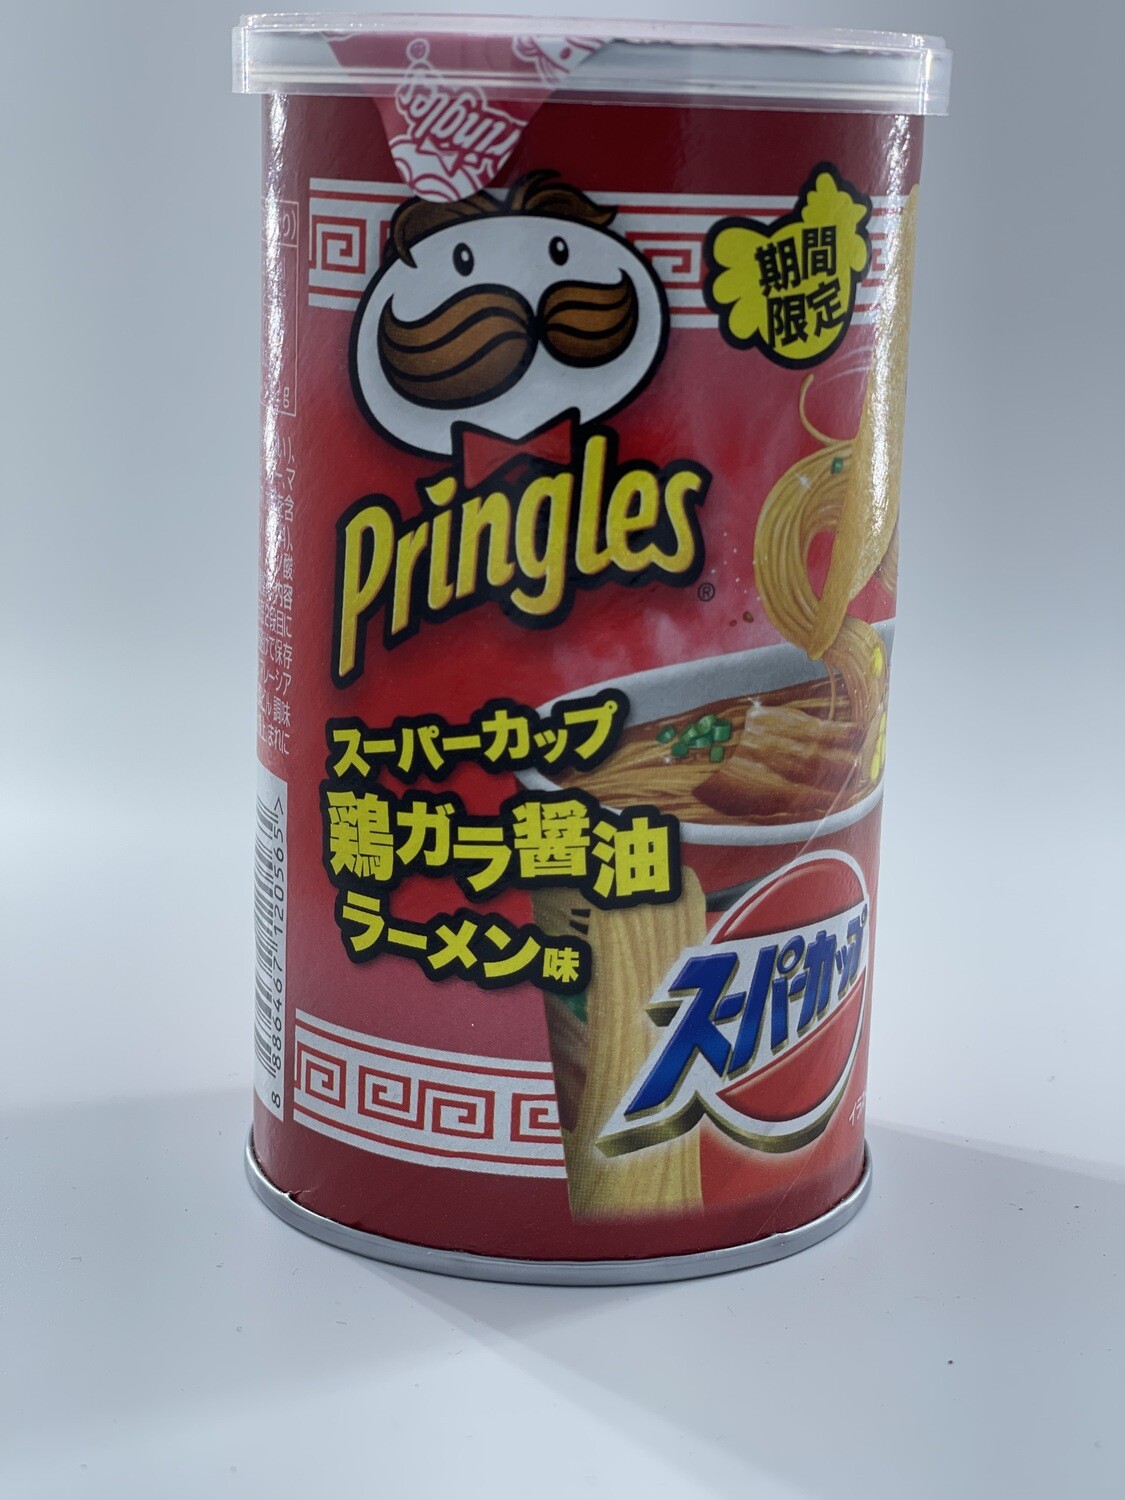 Pringles Soy